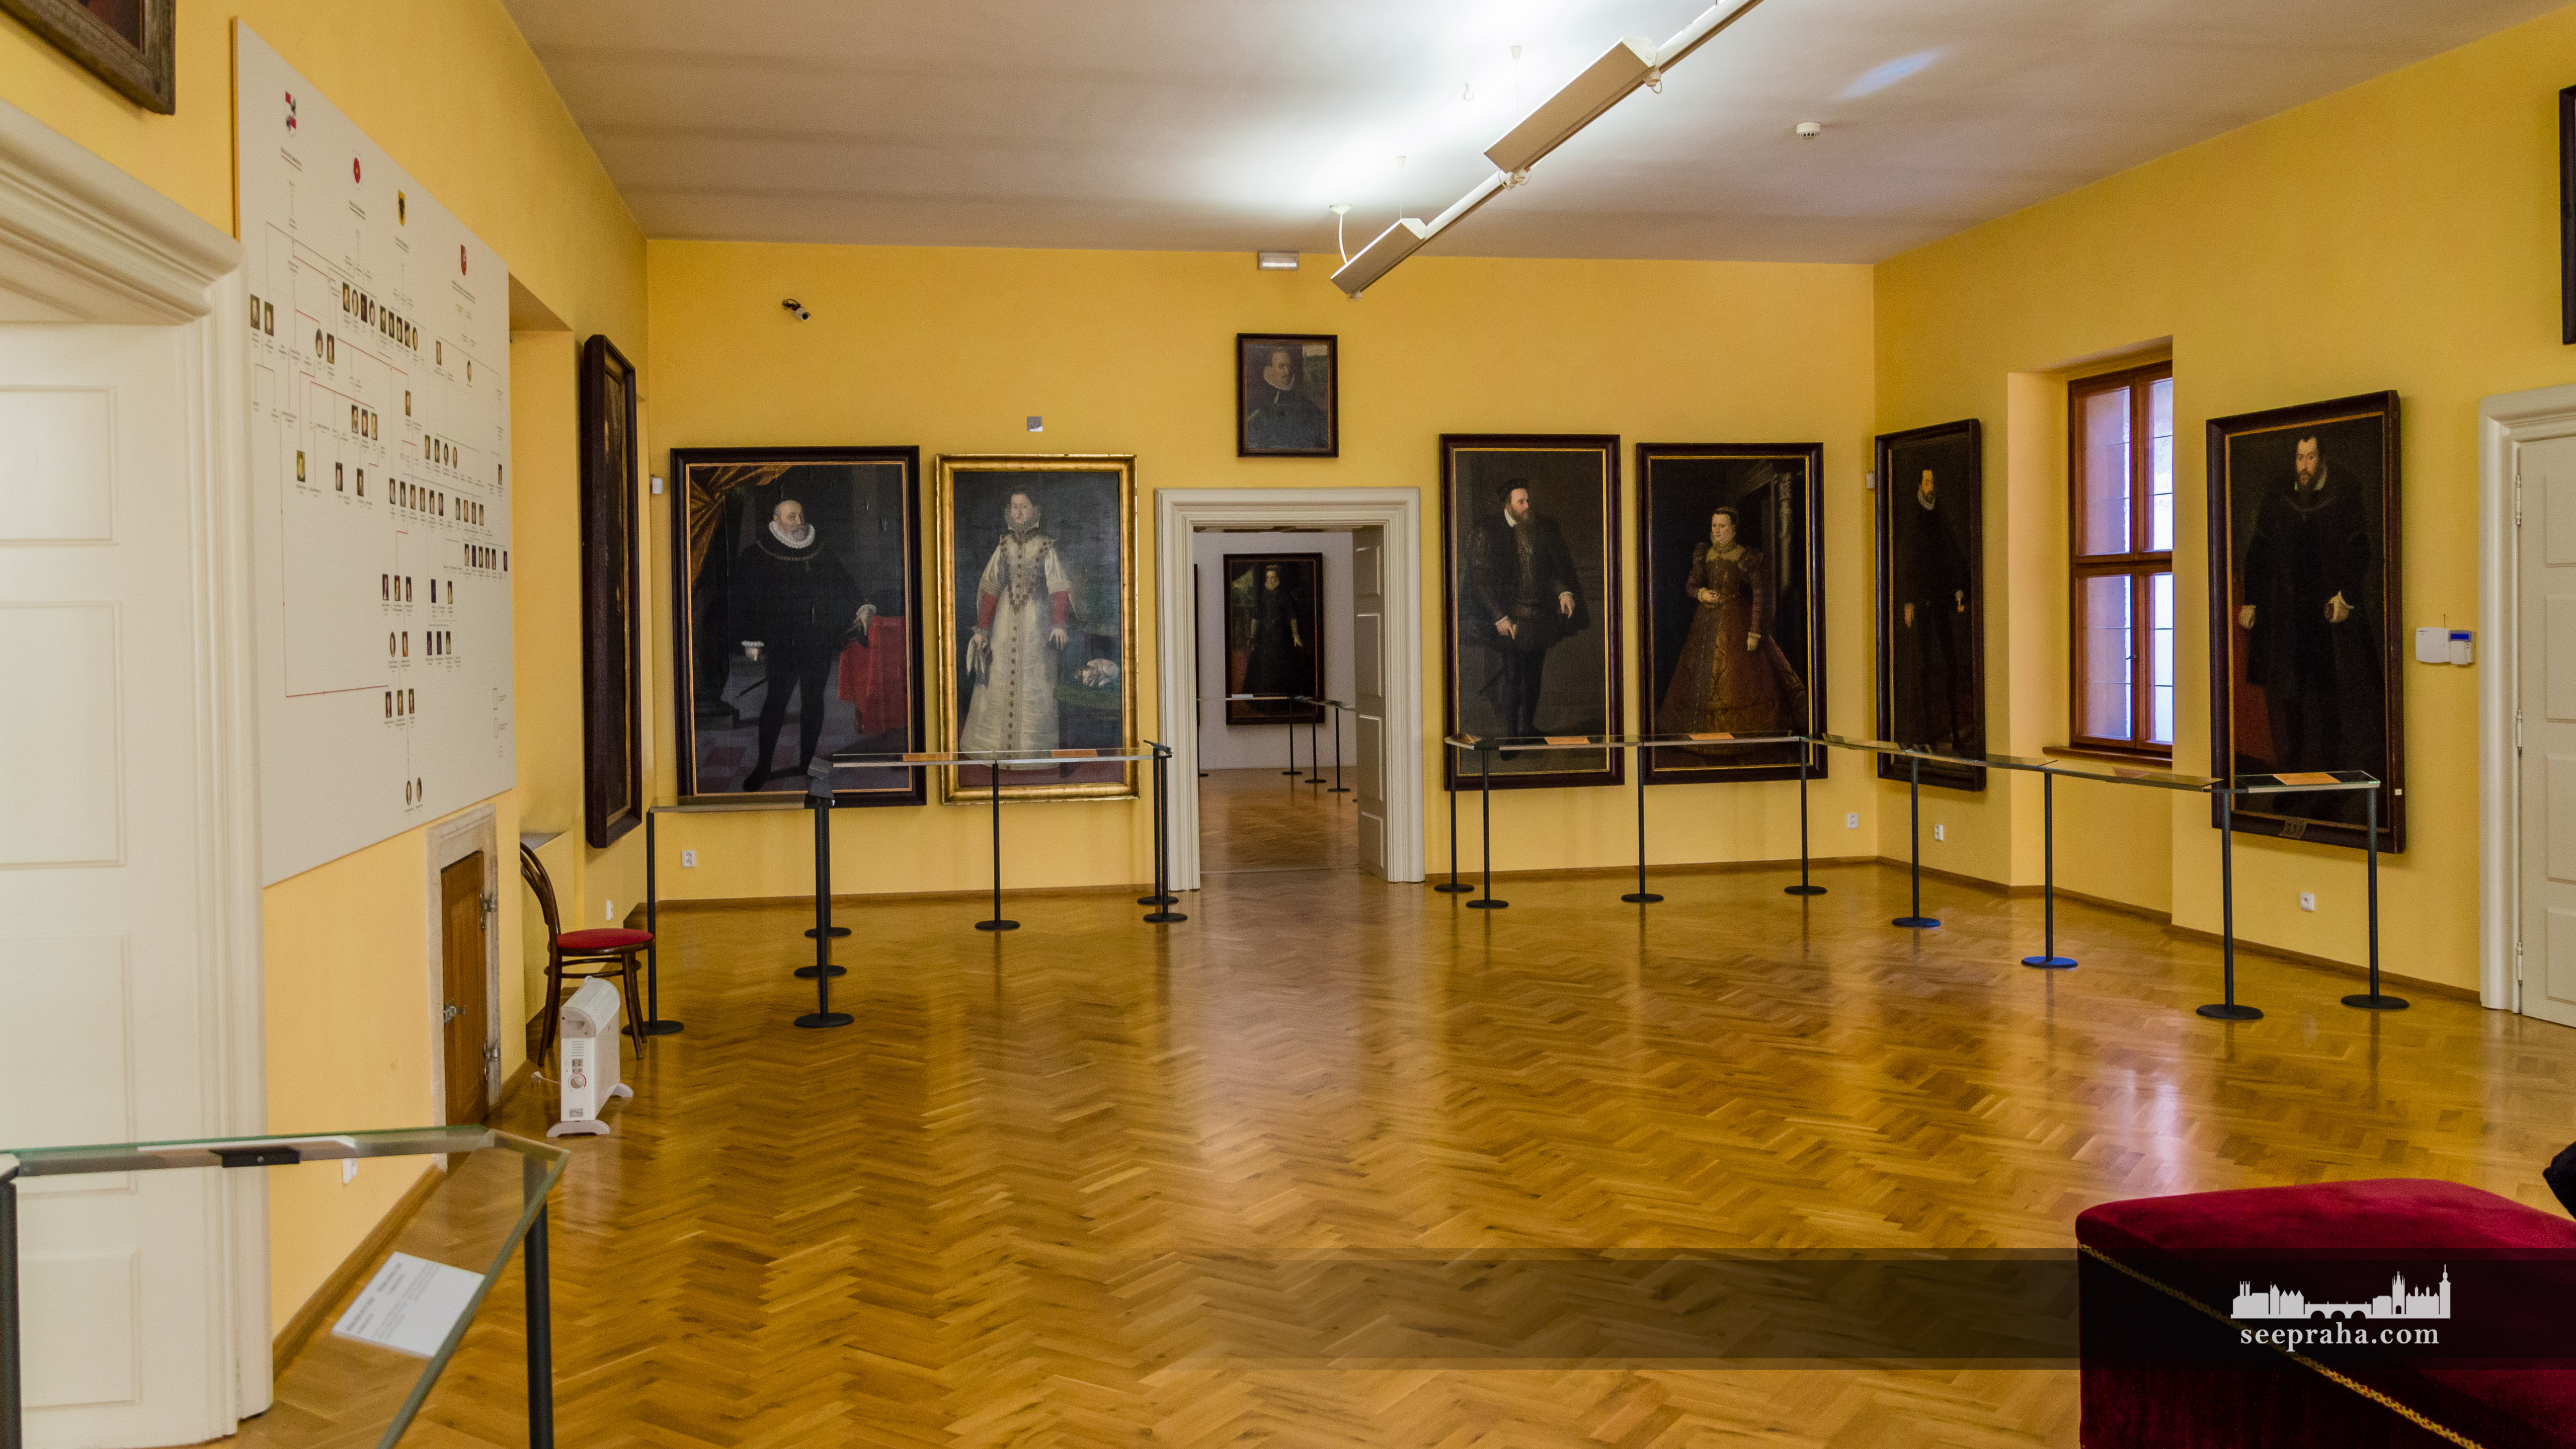 Výstava v Lobkovickém paláce (Pražský hrad), Praha, Česko